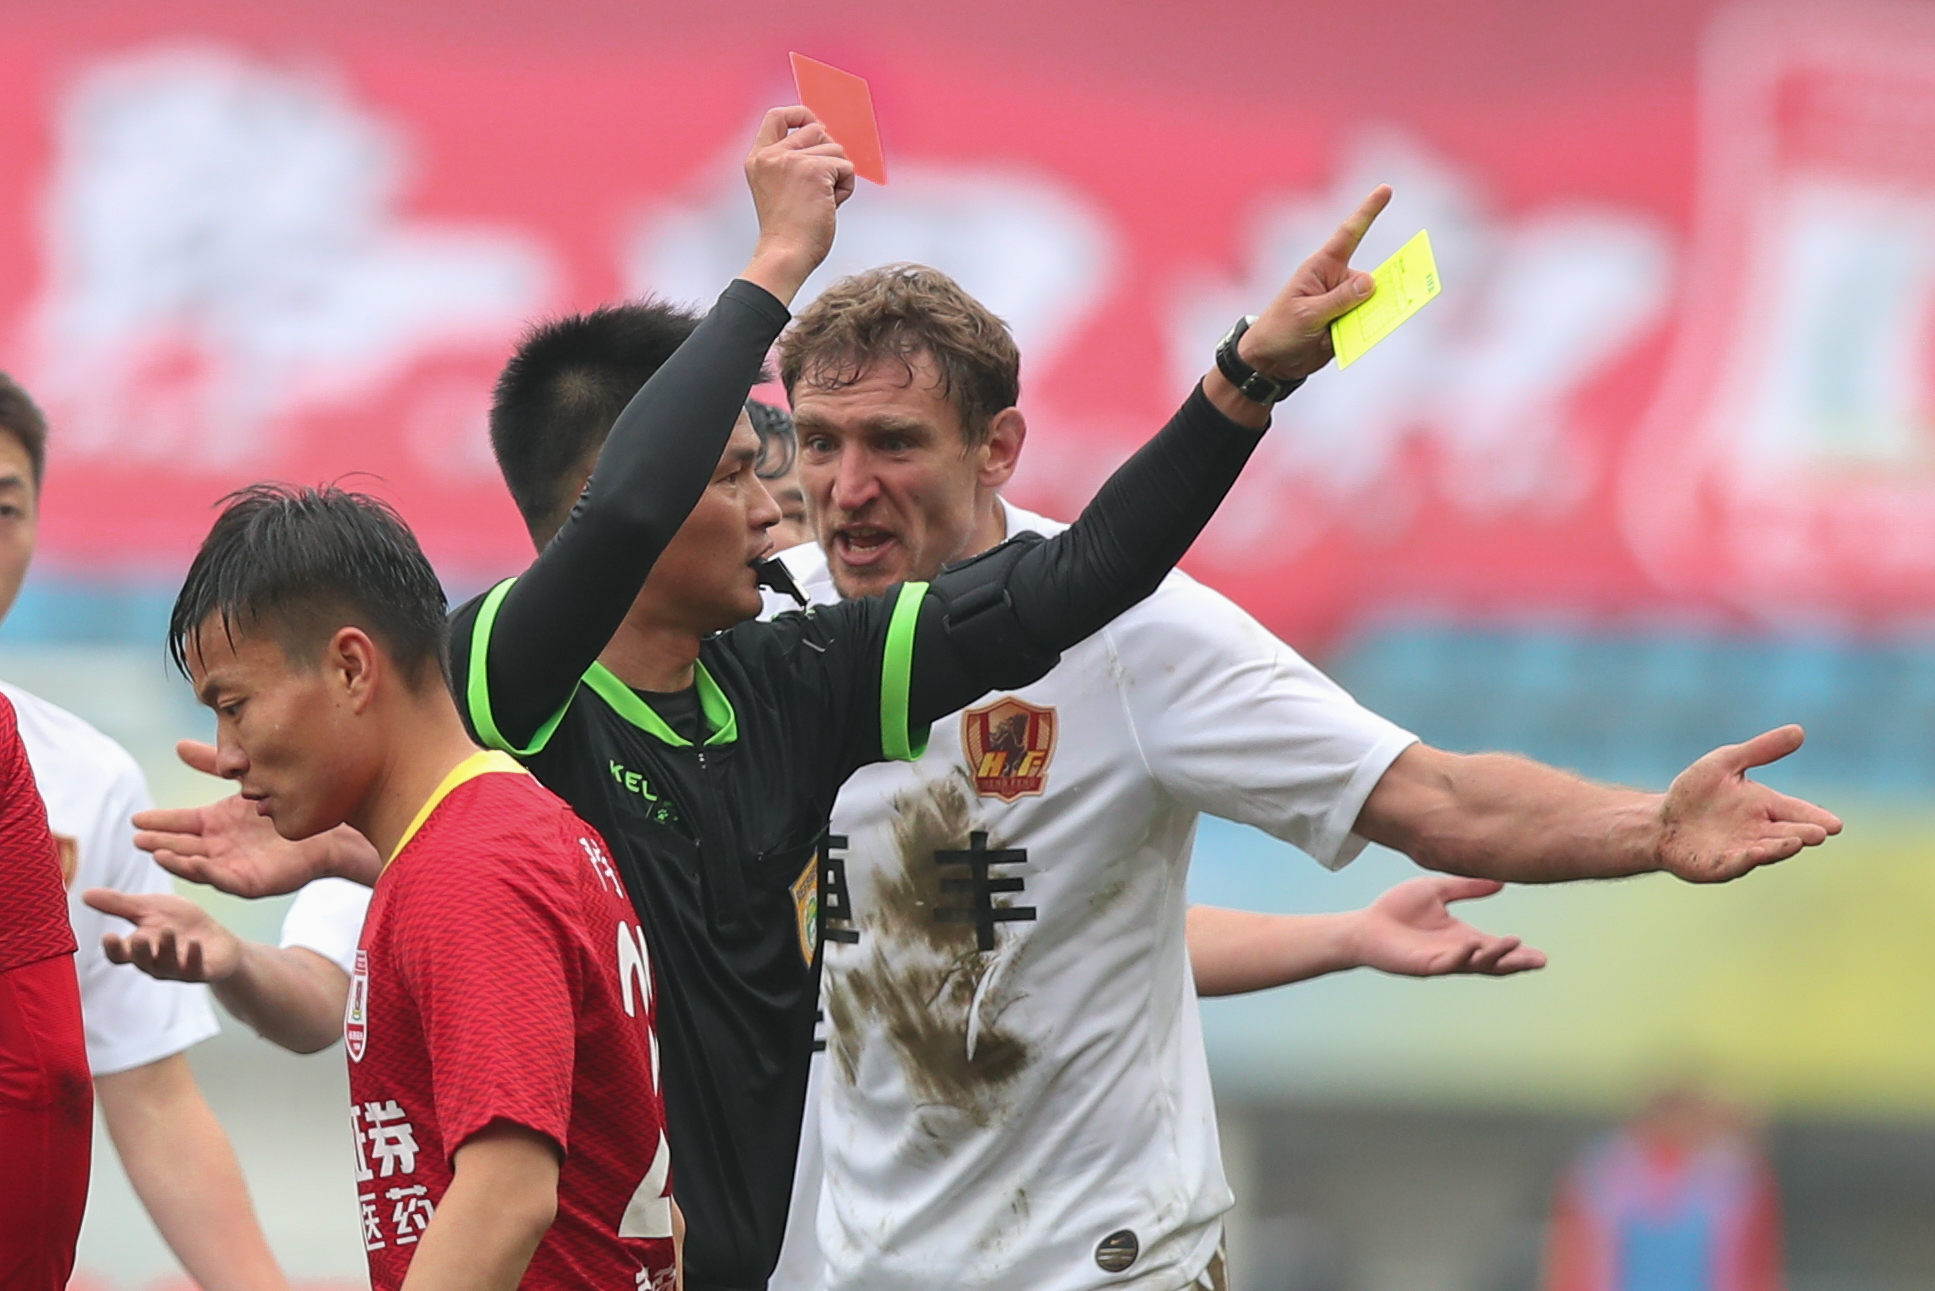 3月16日,主裁判在比赛中向贵州恒丰队球员耶拉维奇(右一)出示红牌.